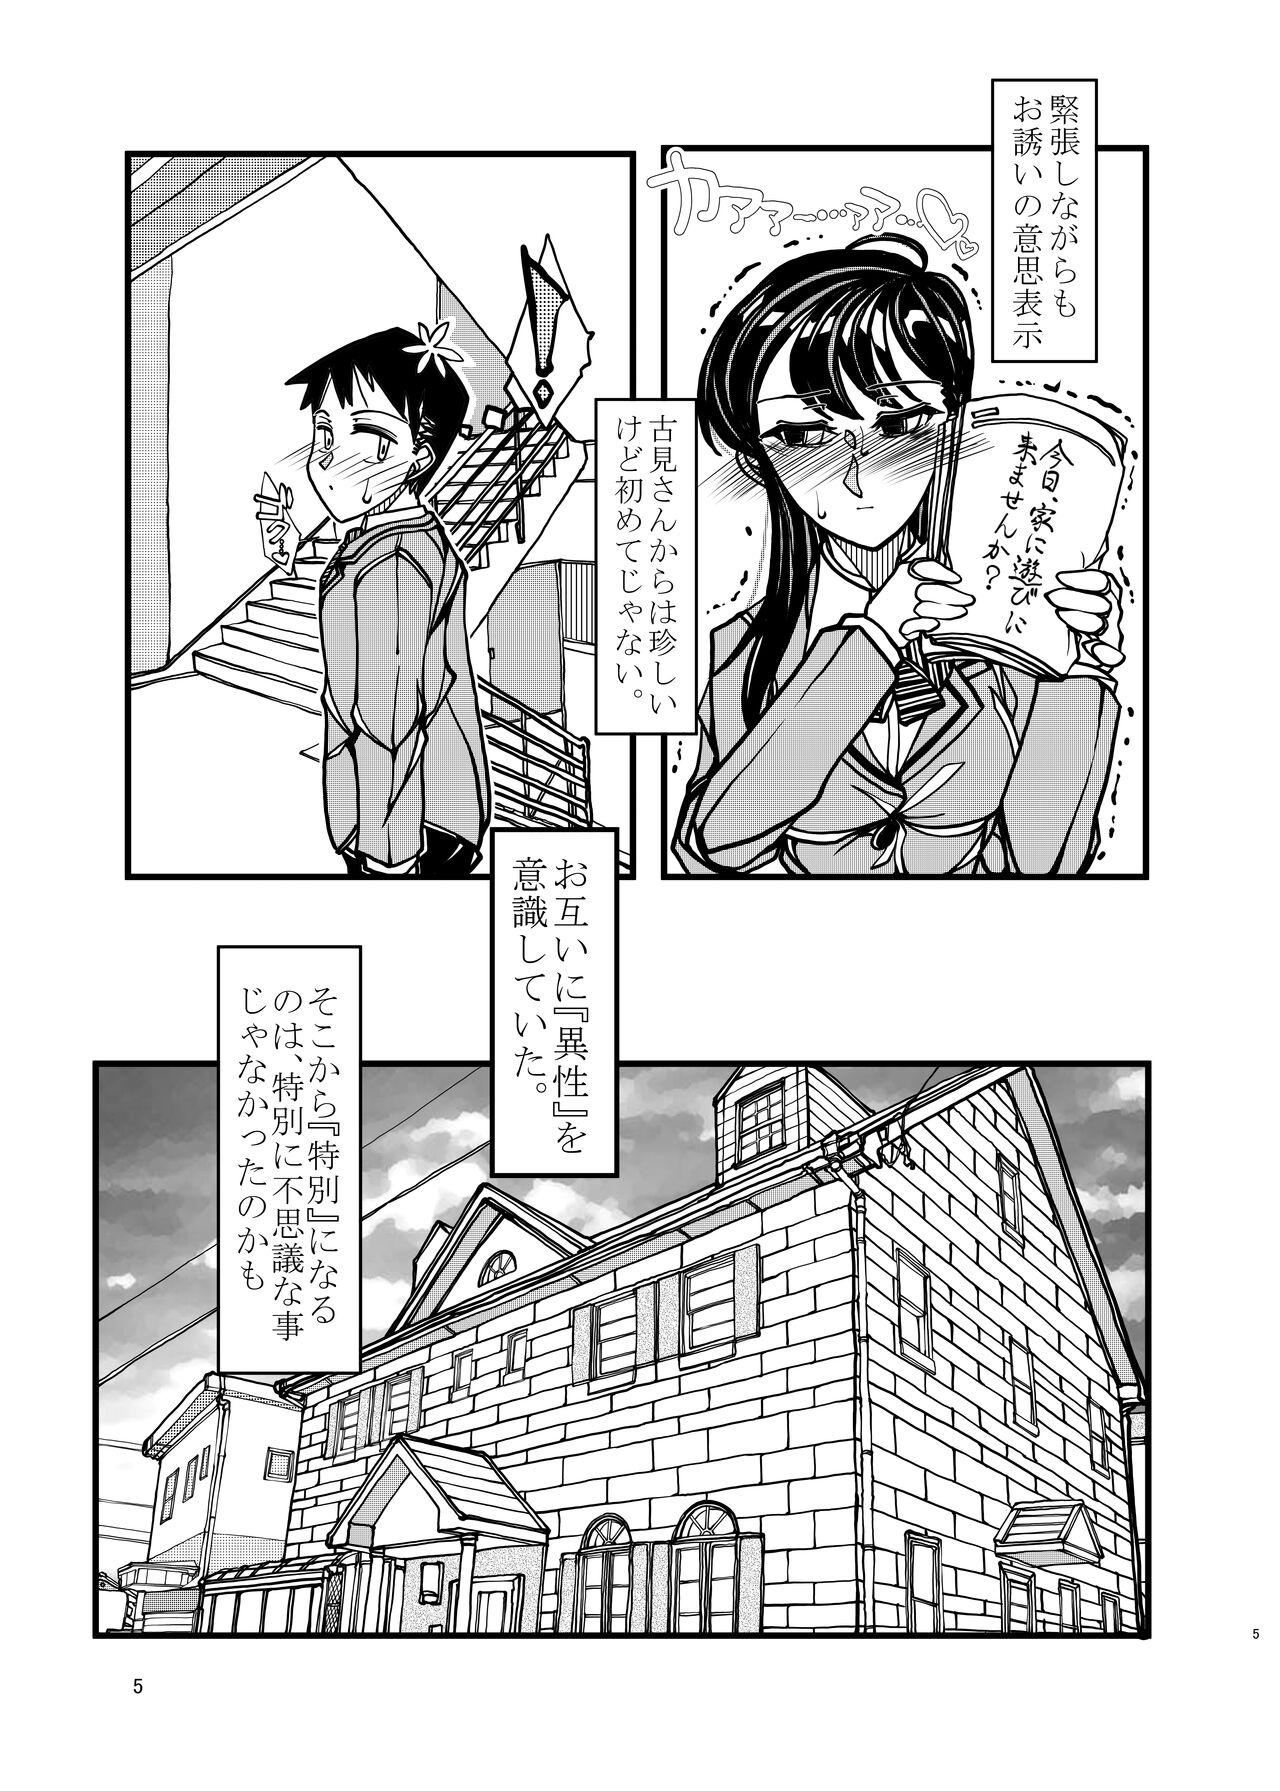 Foreplay Komyushou na Kanojo to Mama - Komi-san wa komyushou desu. Orgasms - Page 5